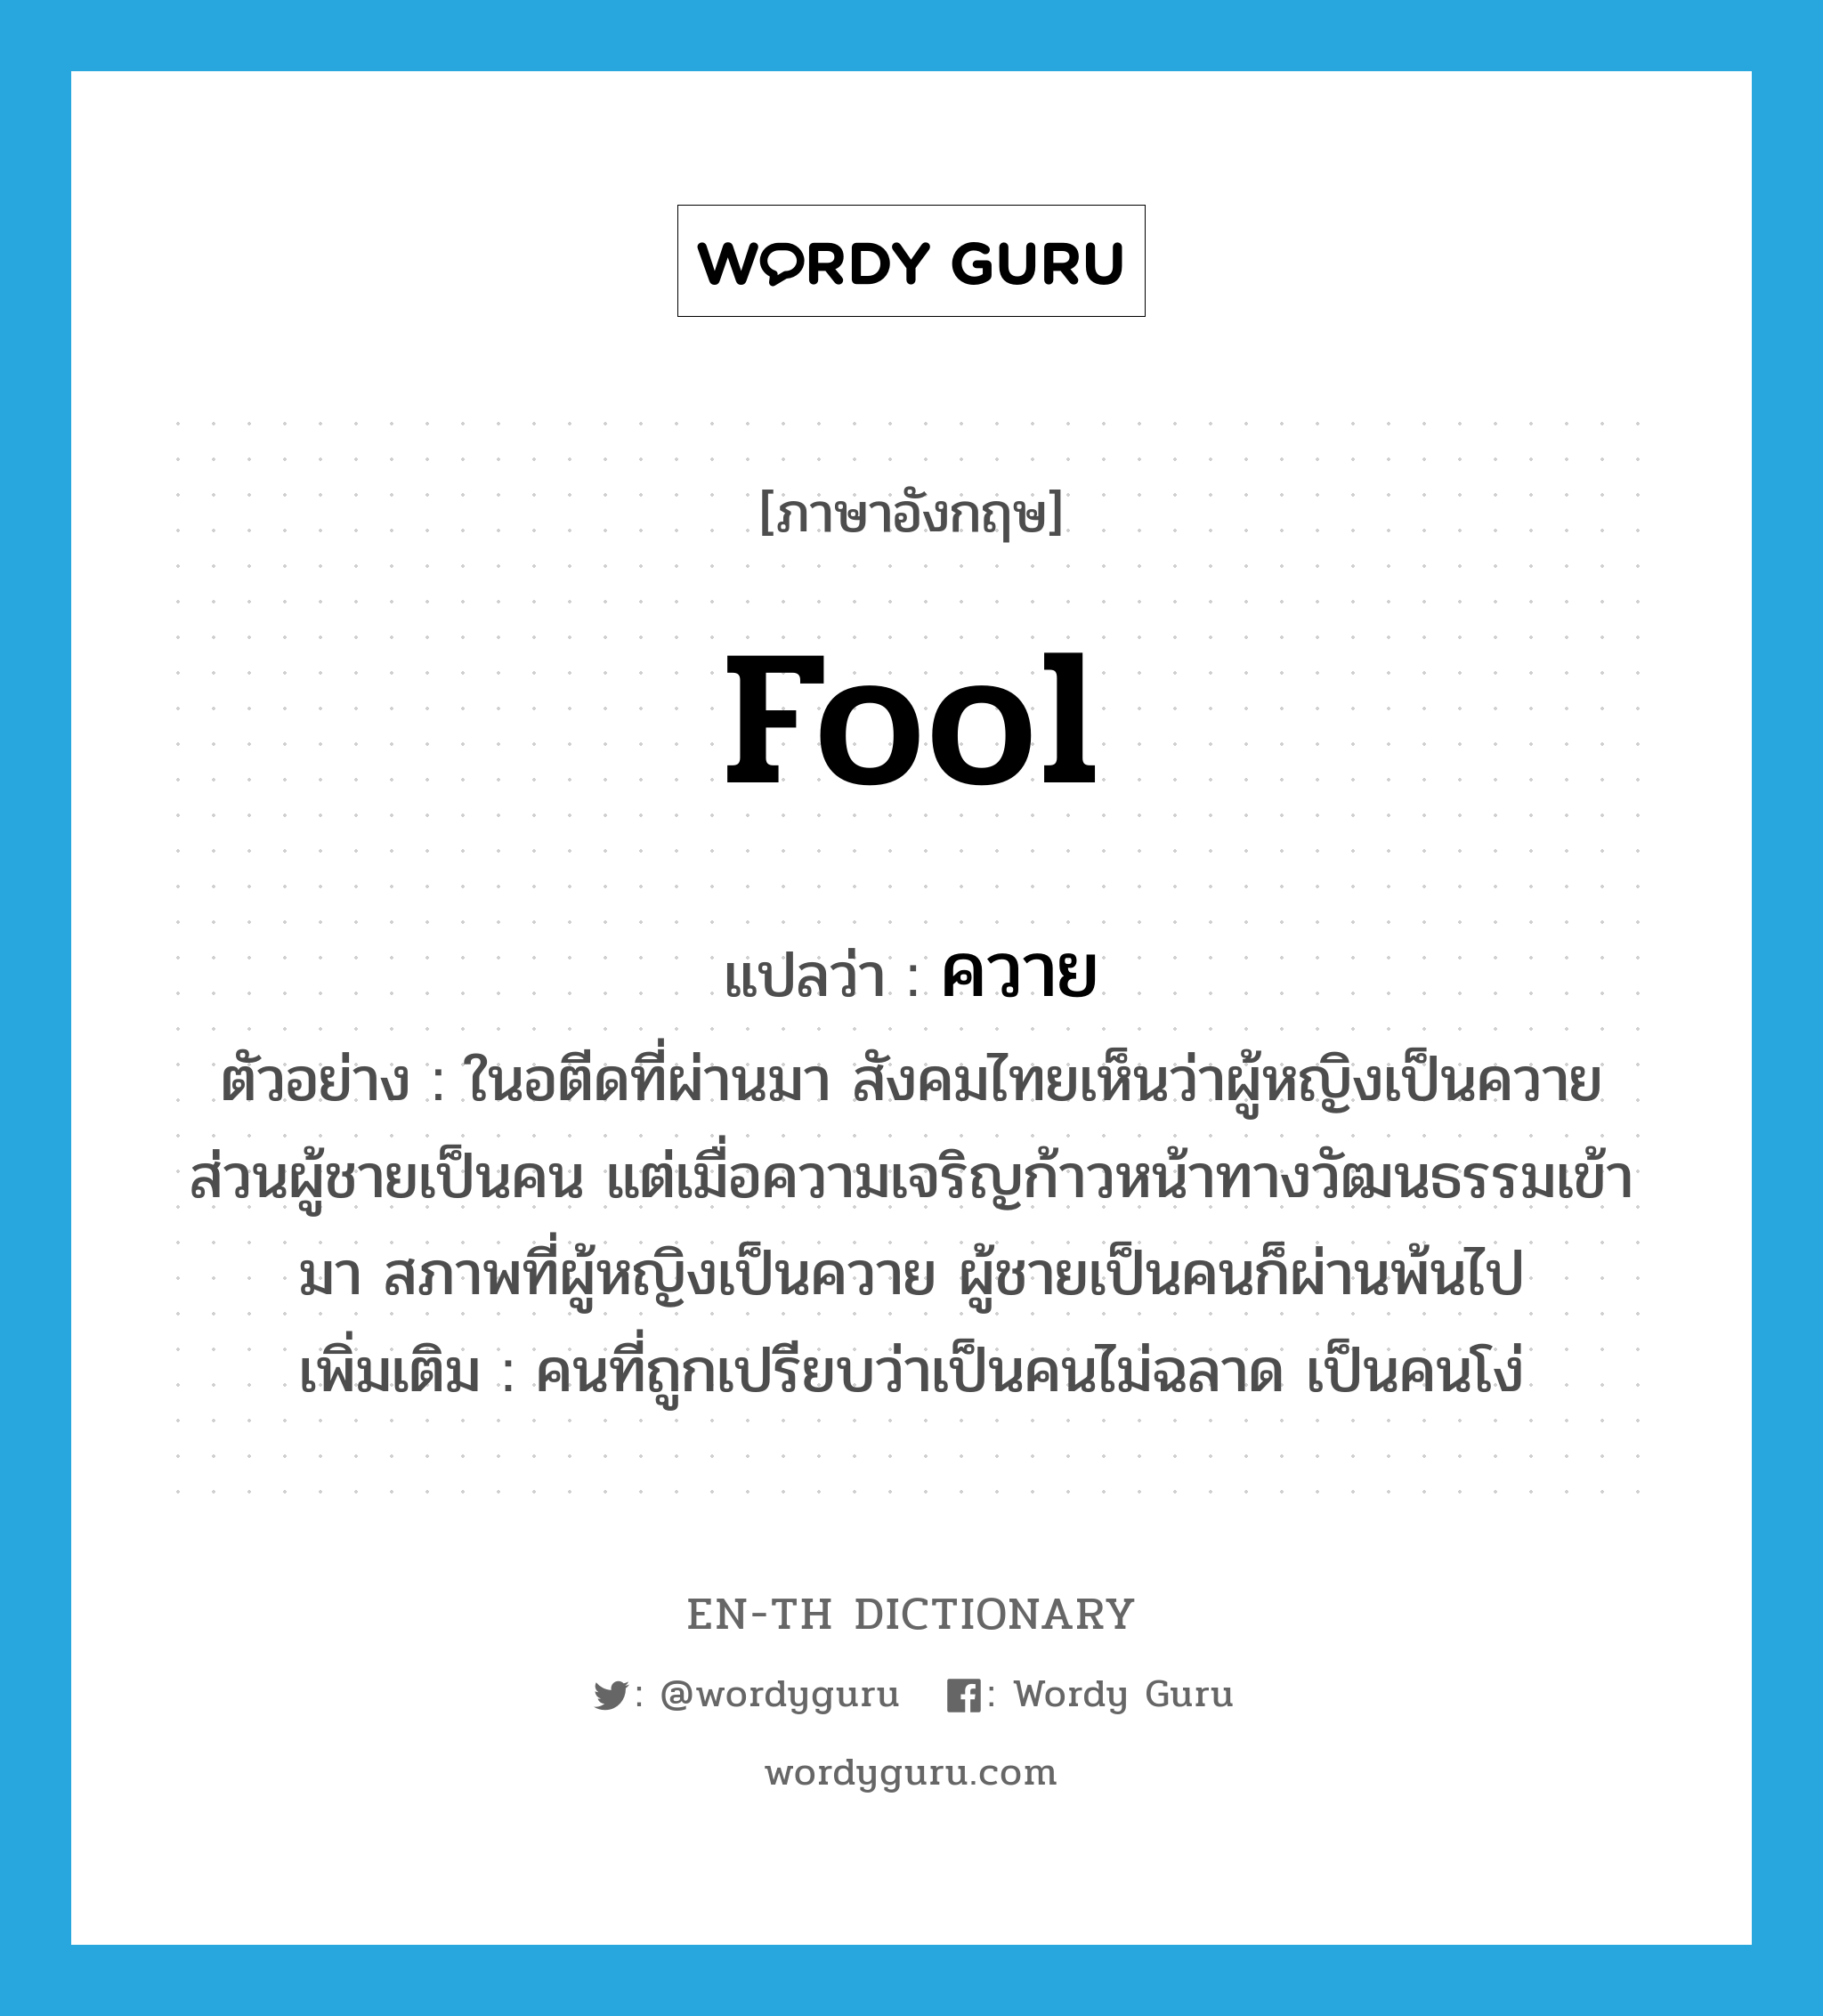 fool แปลว่า?, คำศัพท์ภาษาอังกฤษ fool แปลว่า ควาย ประเภท N ตัวอย่าง ในอตีดที่ผ่านมา สังคมไทยเห็นว่าผู้หญิงเป็นควาย ส่วนผู้ชายเป็นคน แต่เมื่อความเจริญก้าวหน้าทางวัฒนธรรมเข้ามา สภาพที่ผู้หญิงเป็นควาย ผู้ชายเป็นคนก็ผ่านพ้นไป เพิ่มเติม คนที่ถูกเปรียบว่าเป็นคนไม่ฉลาด เป็นคนโง่ หมวด N